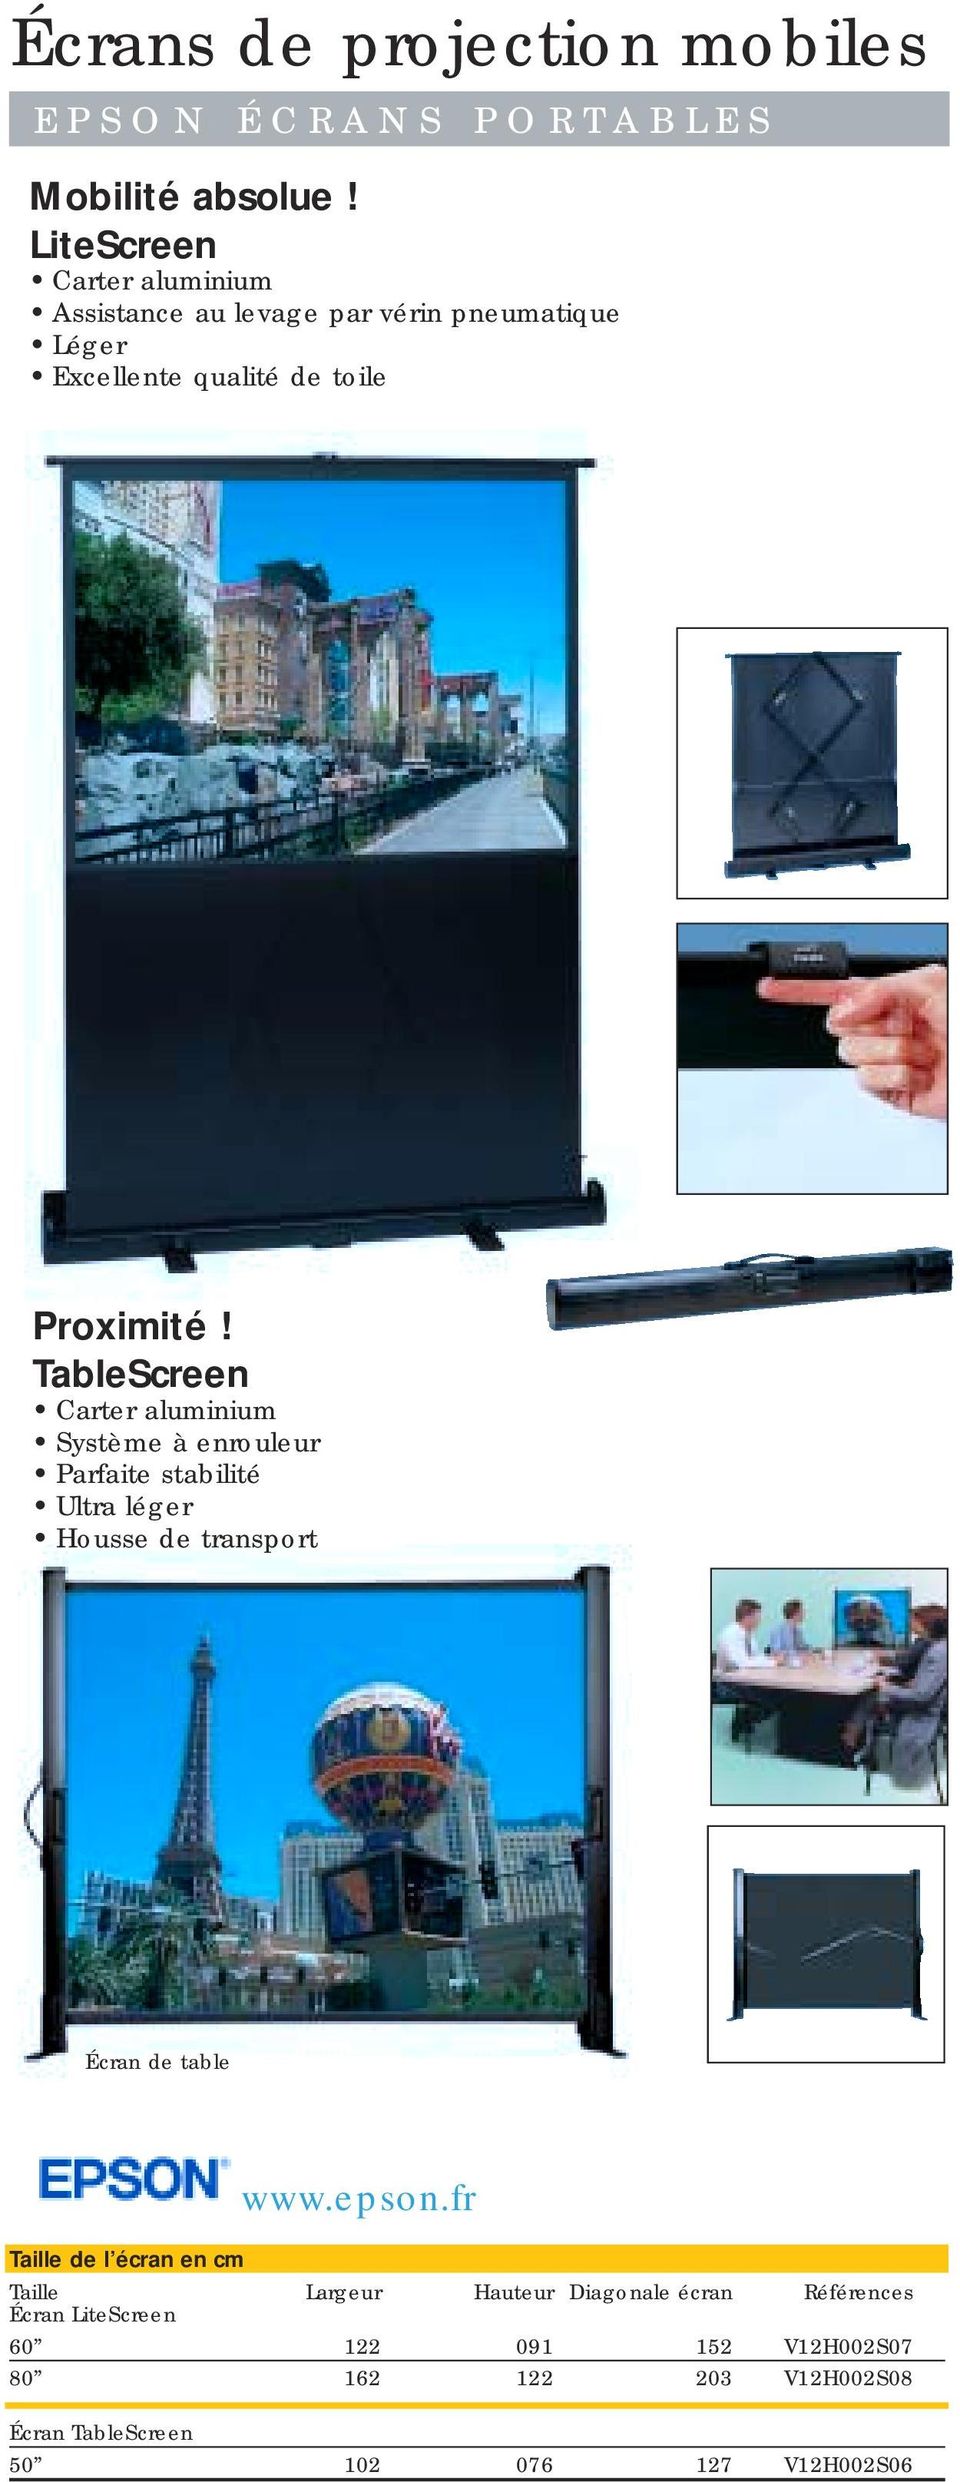 TableScreen Système à enrouleur Parfaite stabilité Ultra léger Housse de transport Écran de table www.epson.